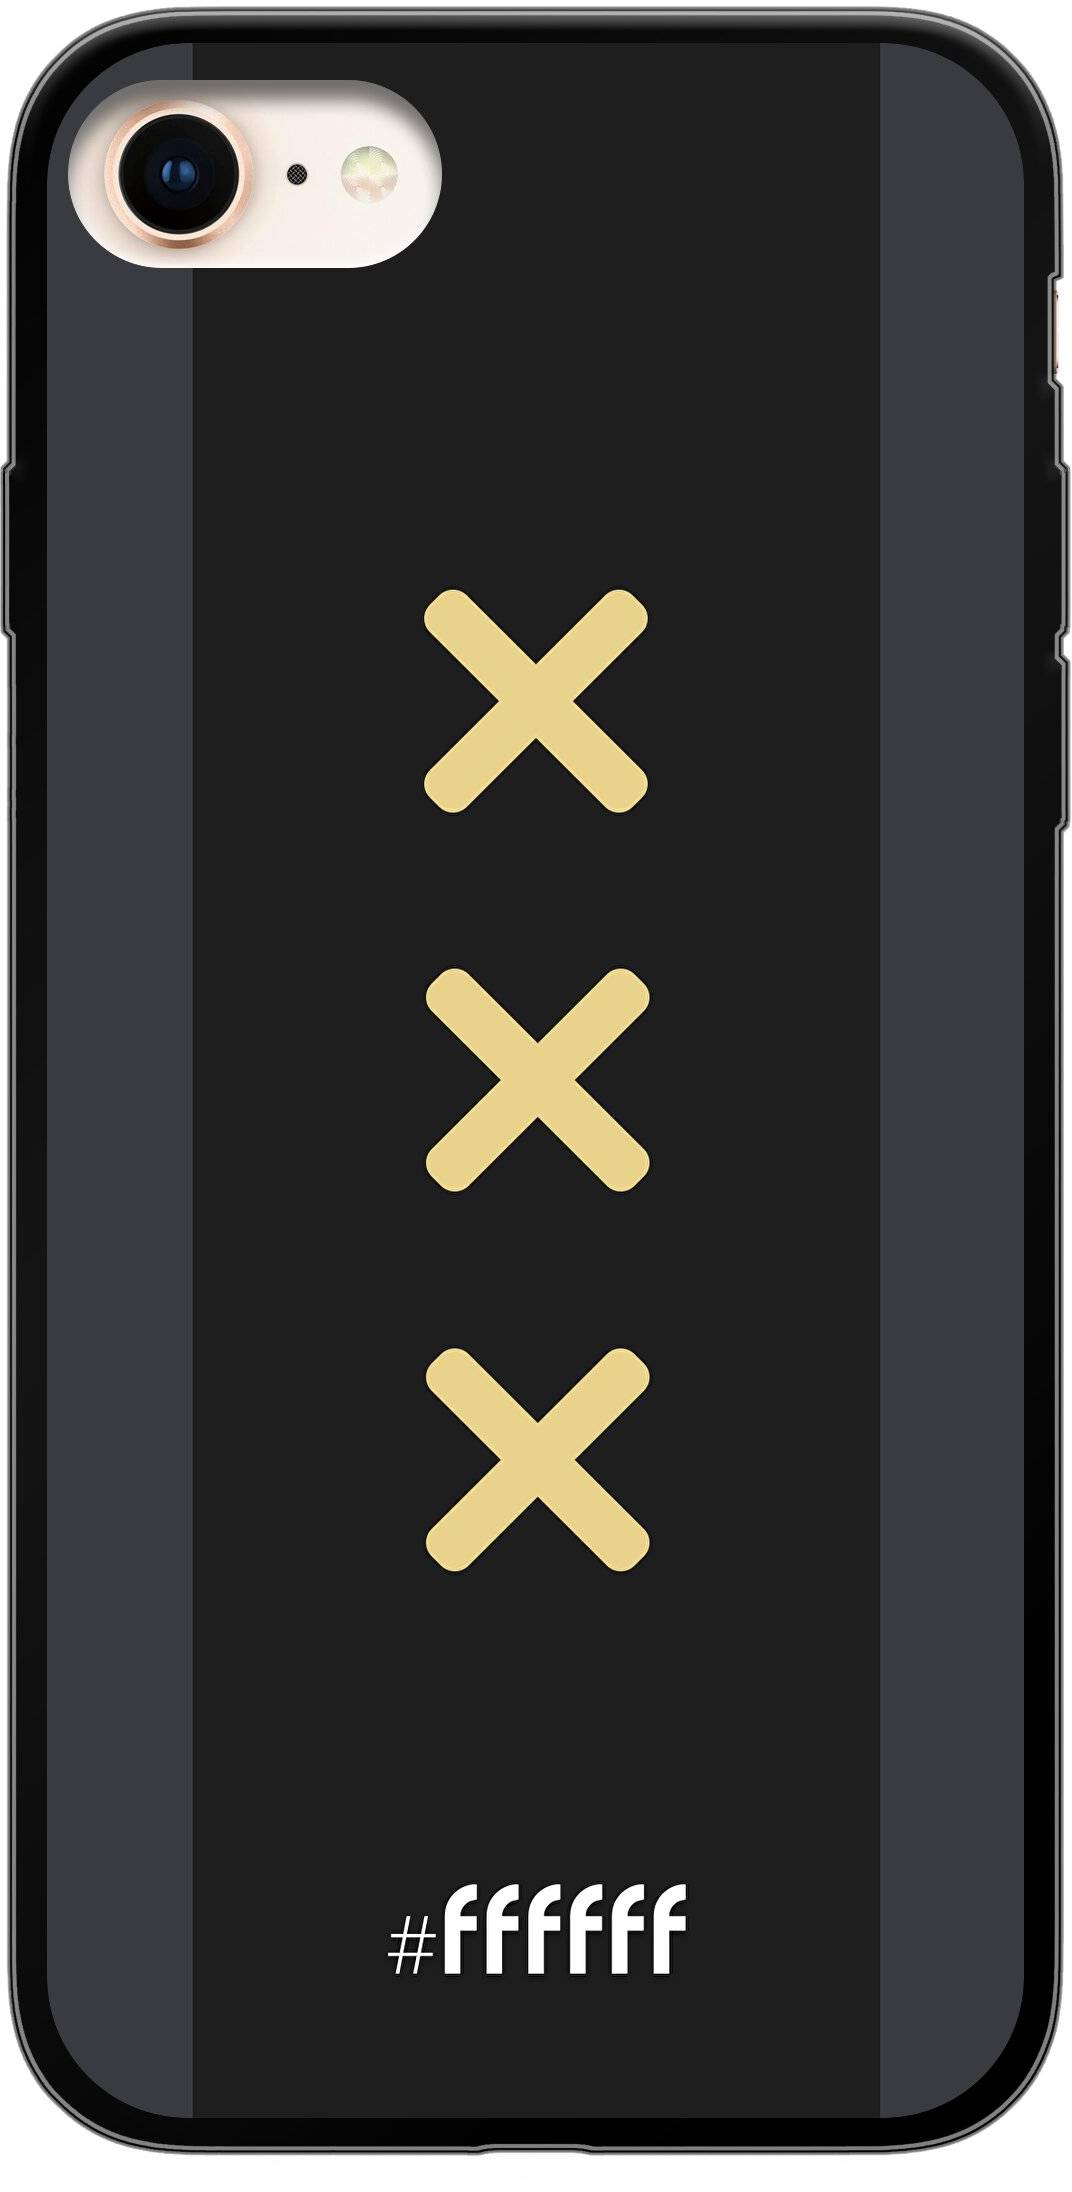 Ajax Europees Uitshirt 2020-2021 iPhone 7